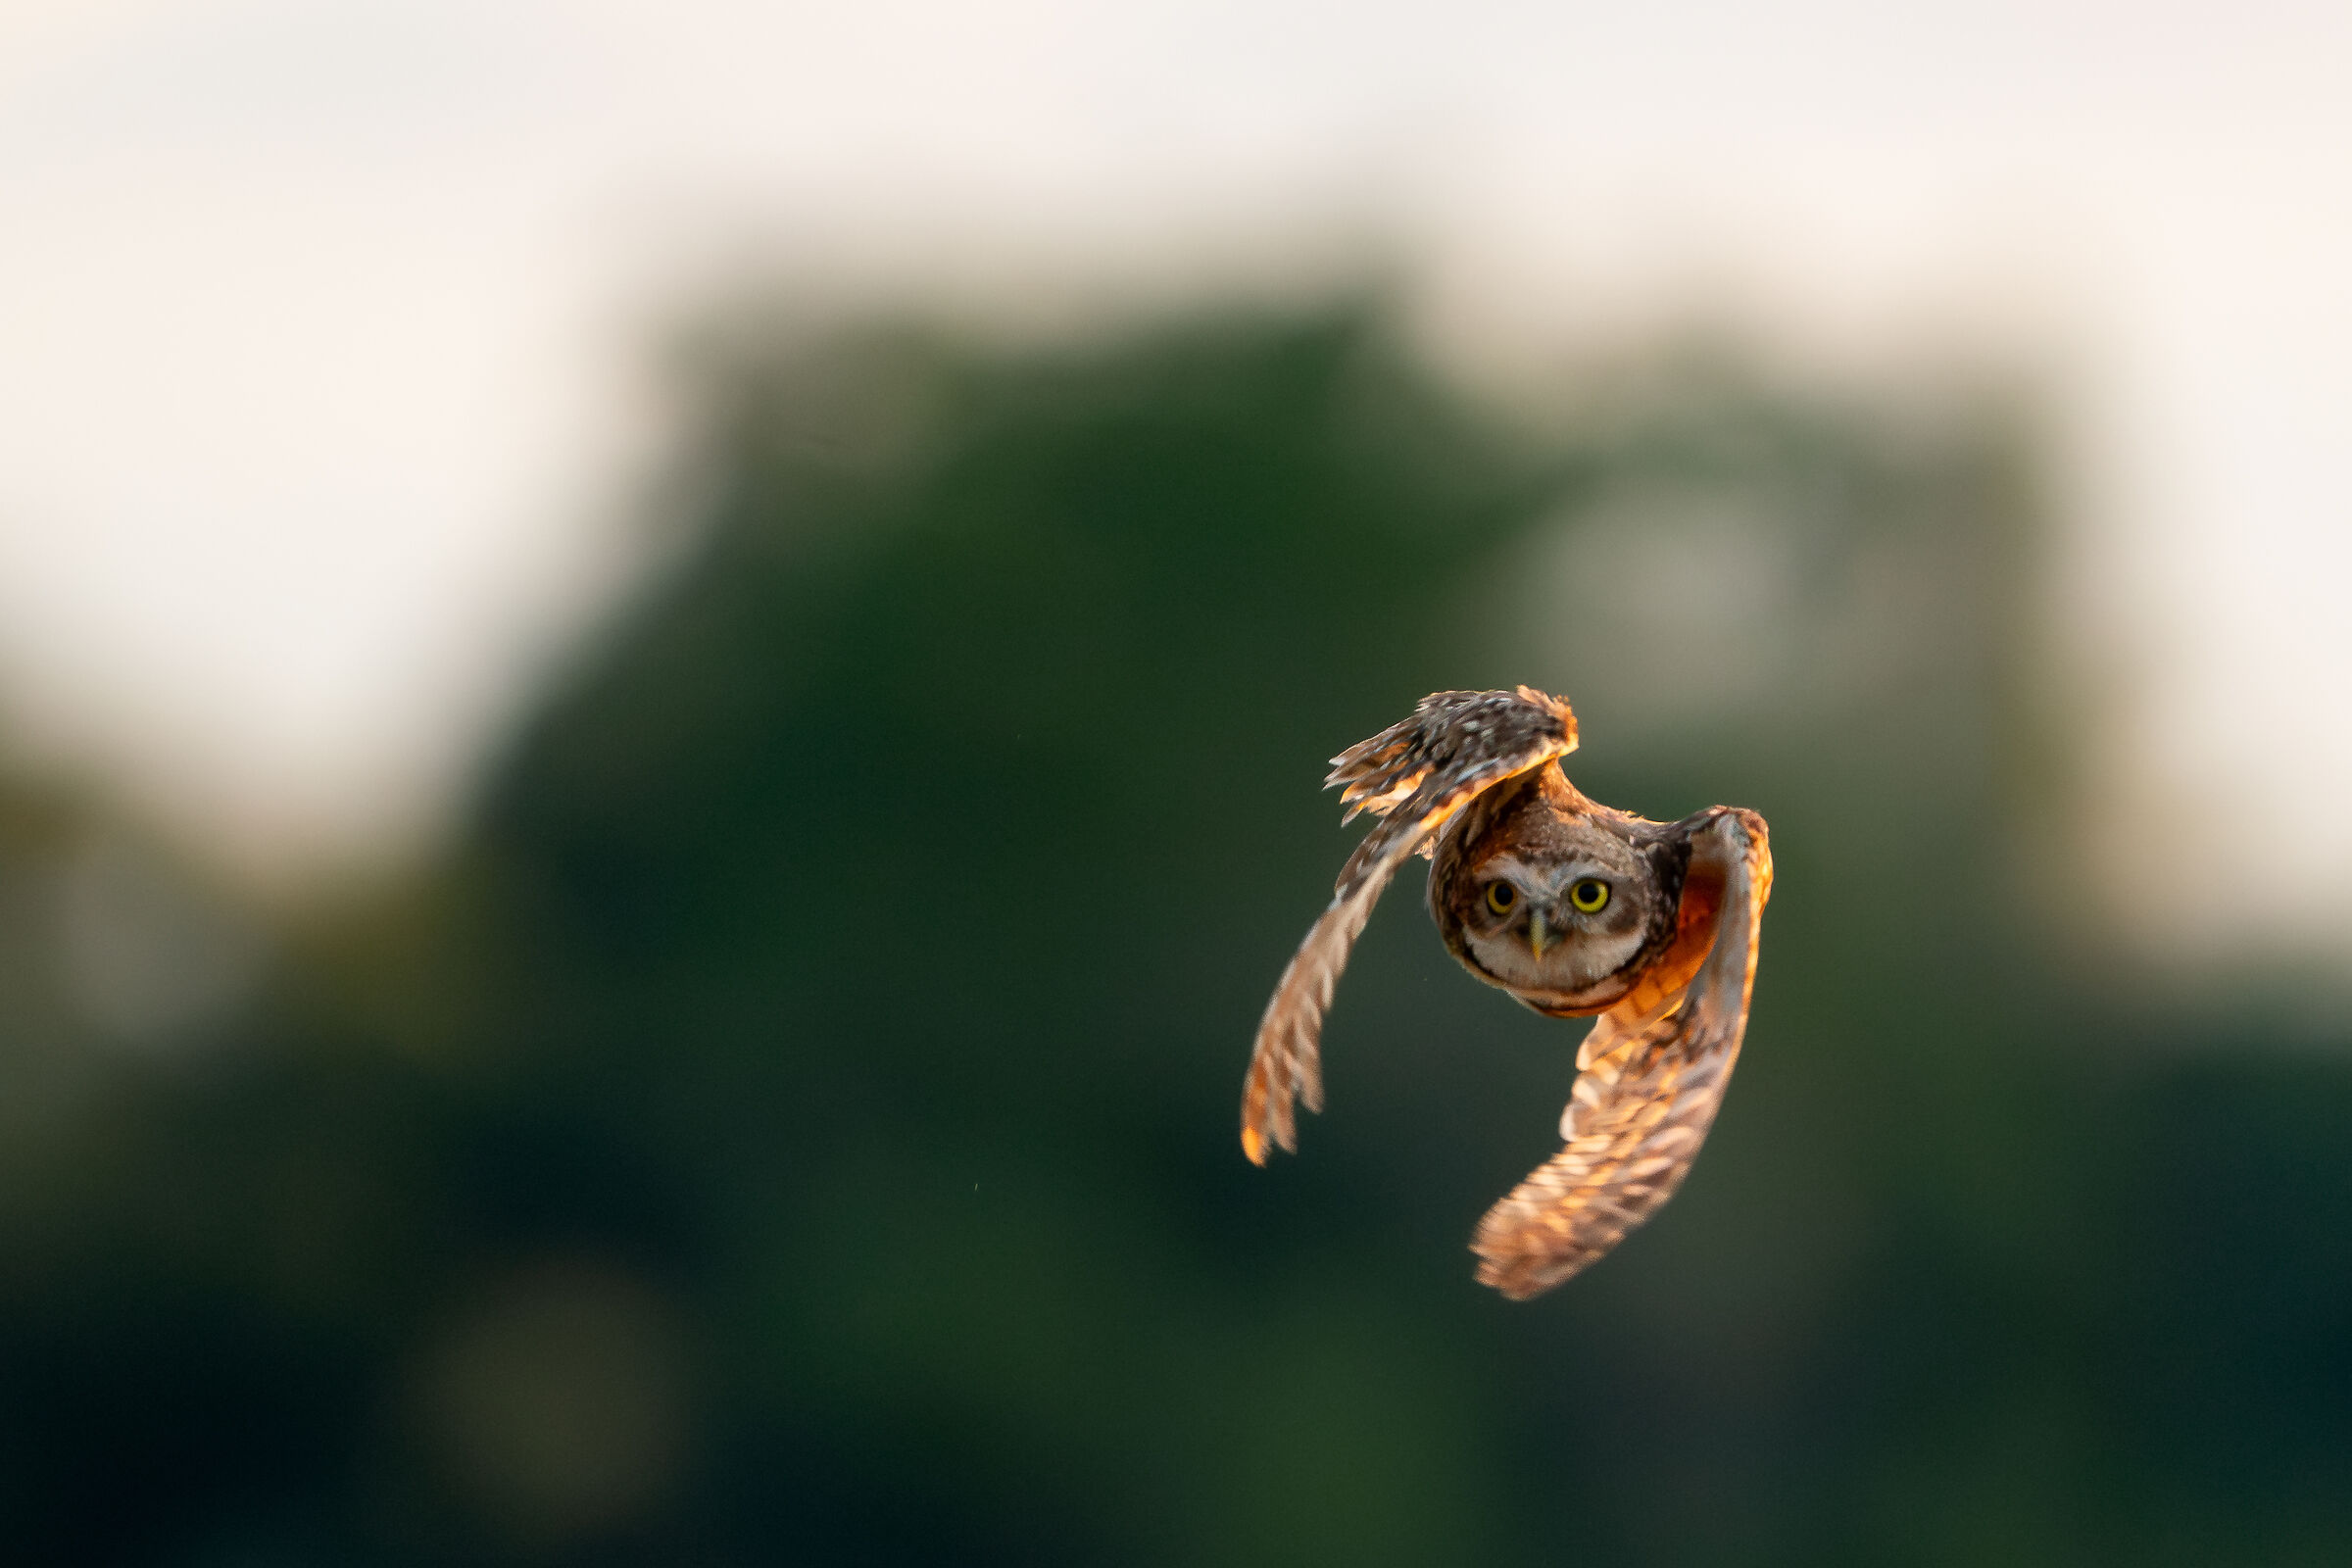 Owl in flight...